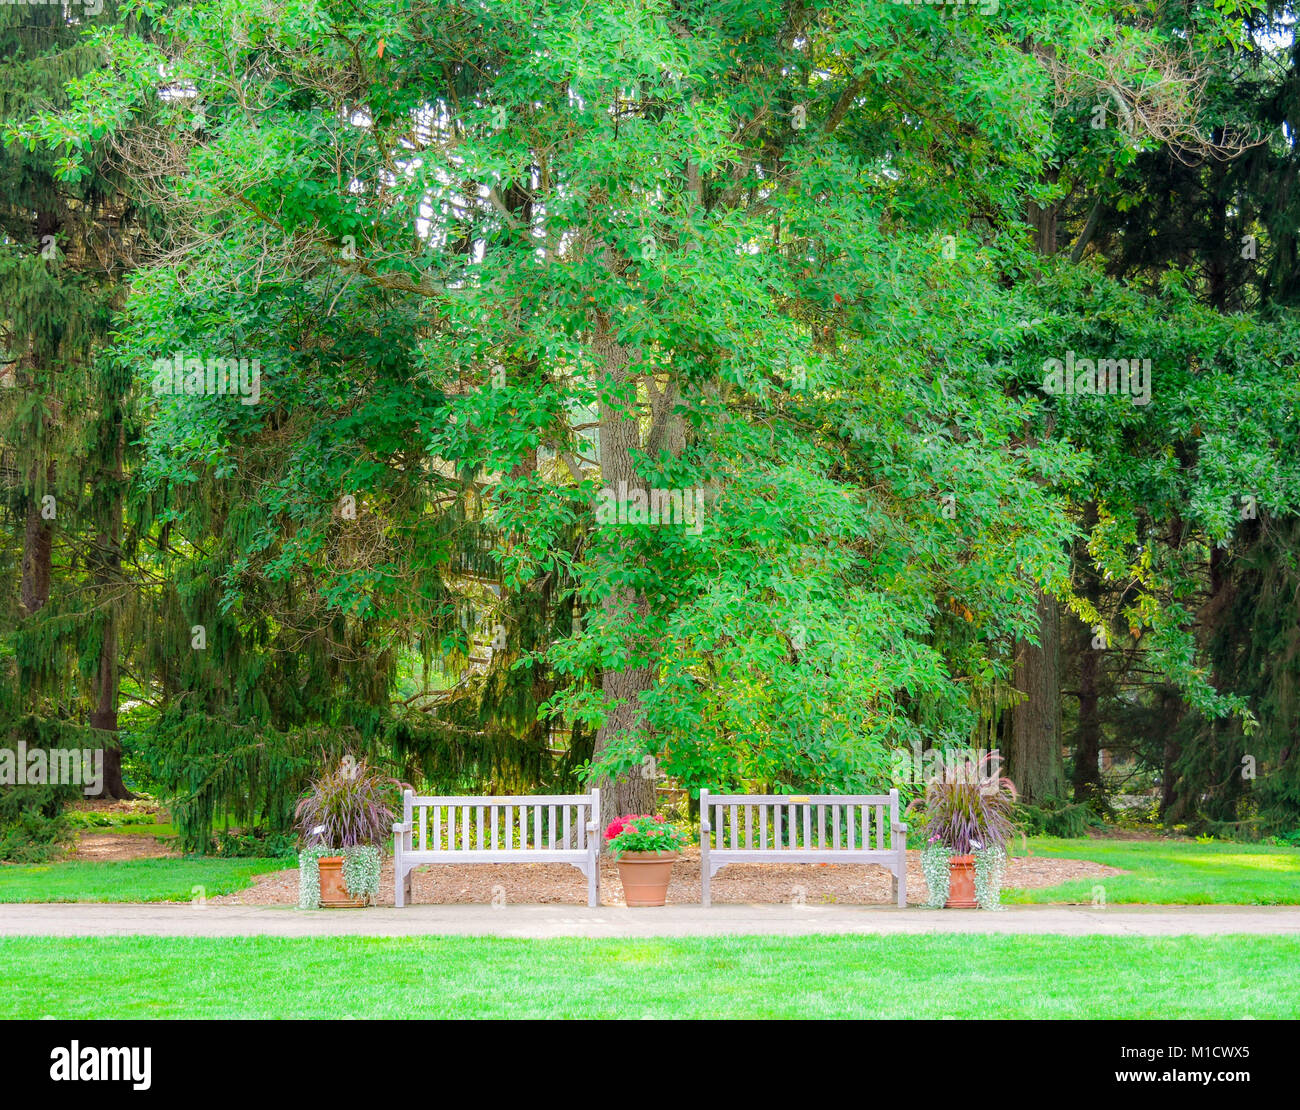 Zwei leere Bänke sitzen vor der grünen Bäume und Evergreens. Ein Wanderweg führt die Bänke als der perfekte Ort für eine Pause. Stockfoto